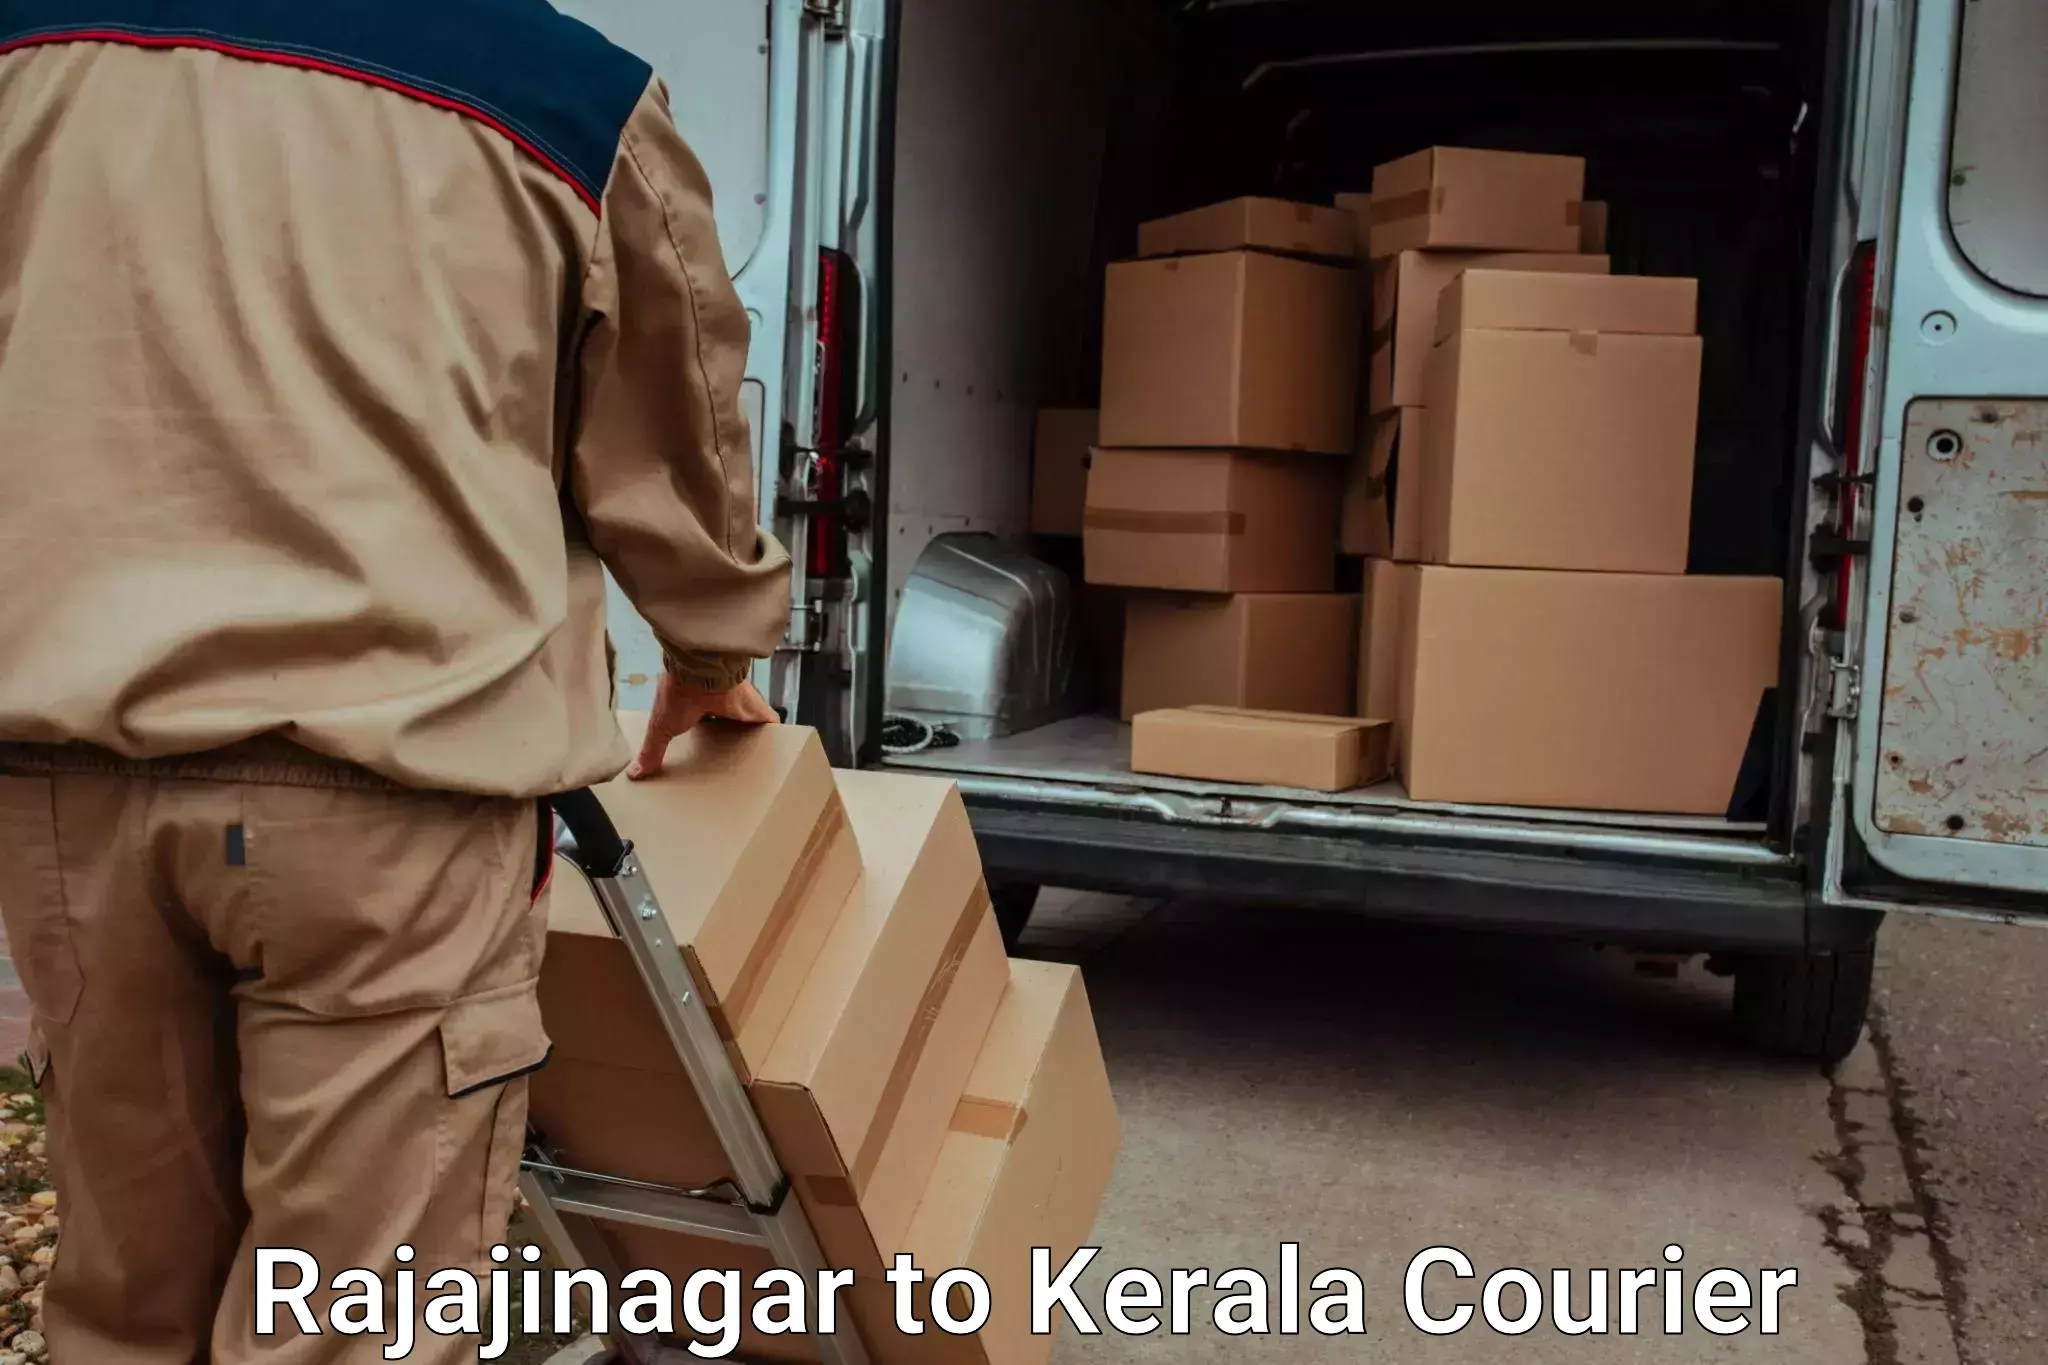 Luggage transport company Rajajinagar to Adoor